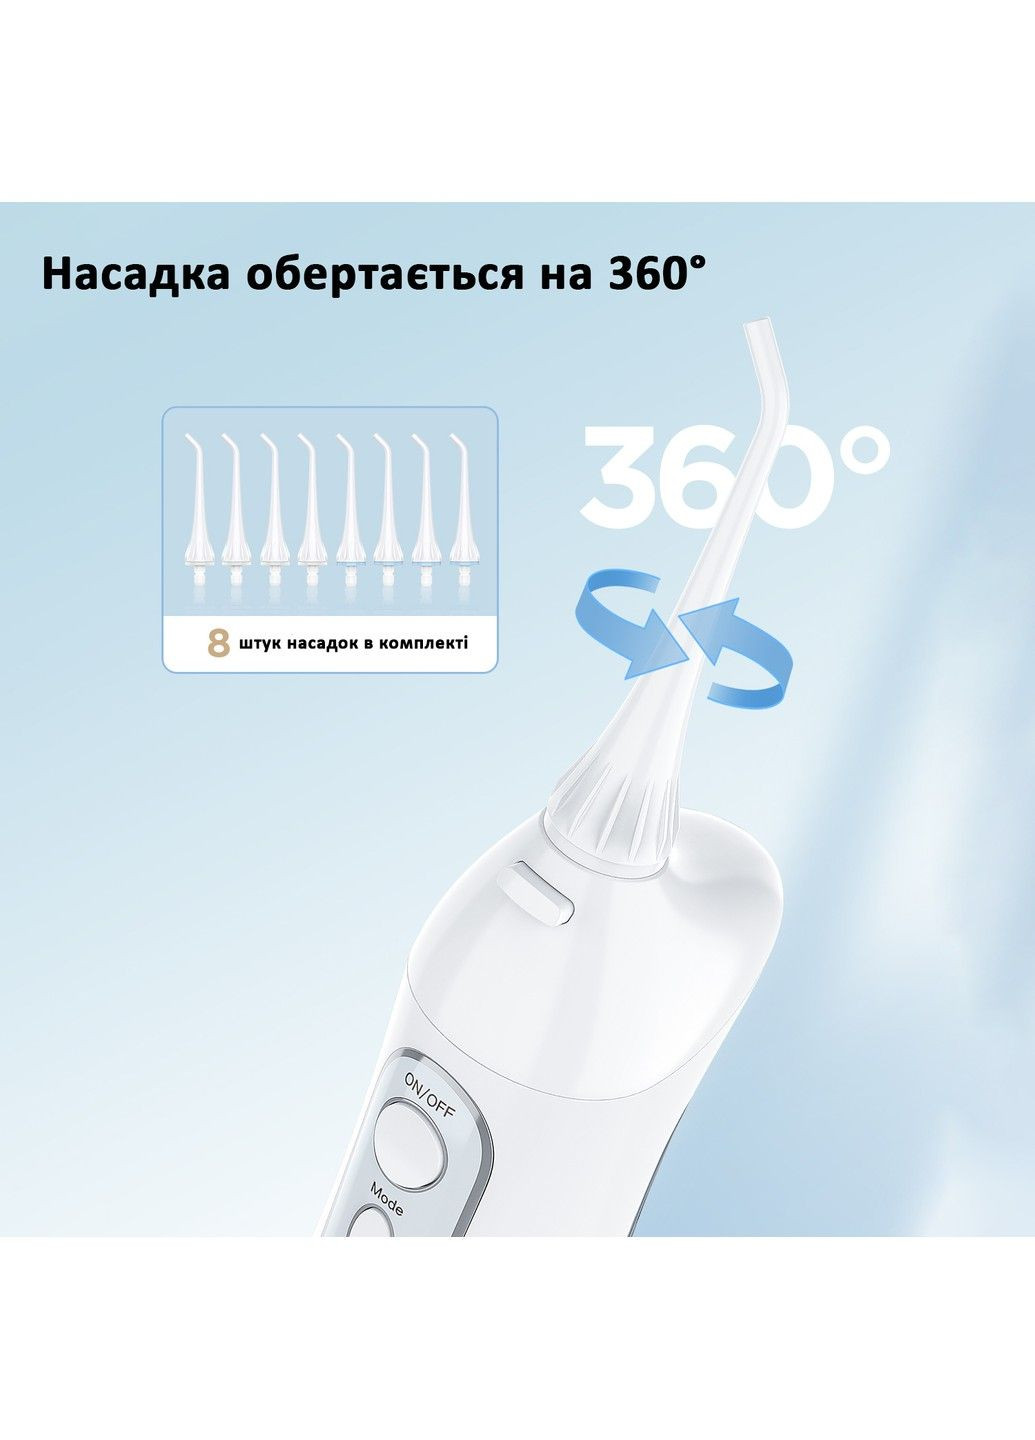 Набір електрична зубна щітка D7 + іригатор F5020E White Fairywill (292405525)